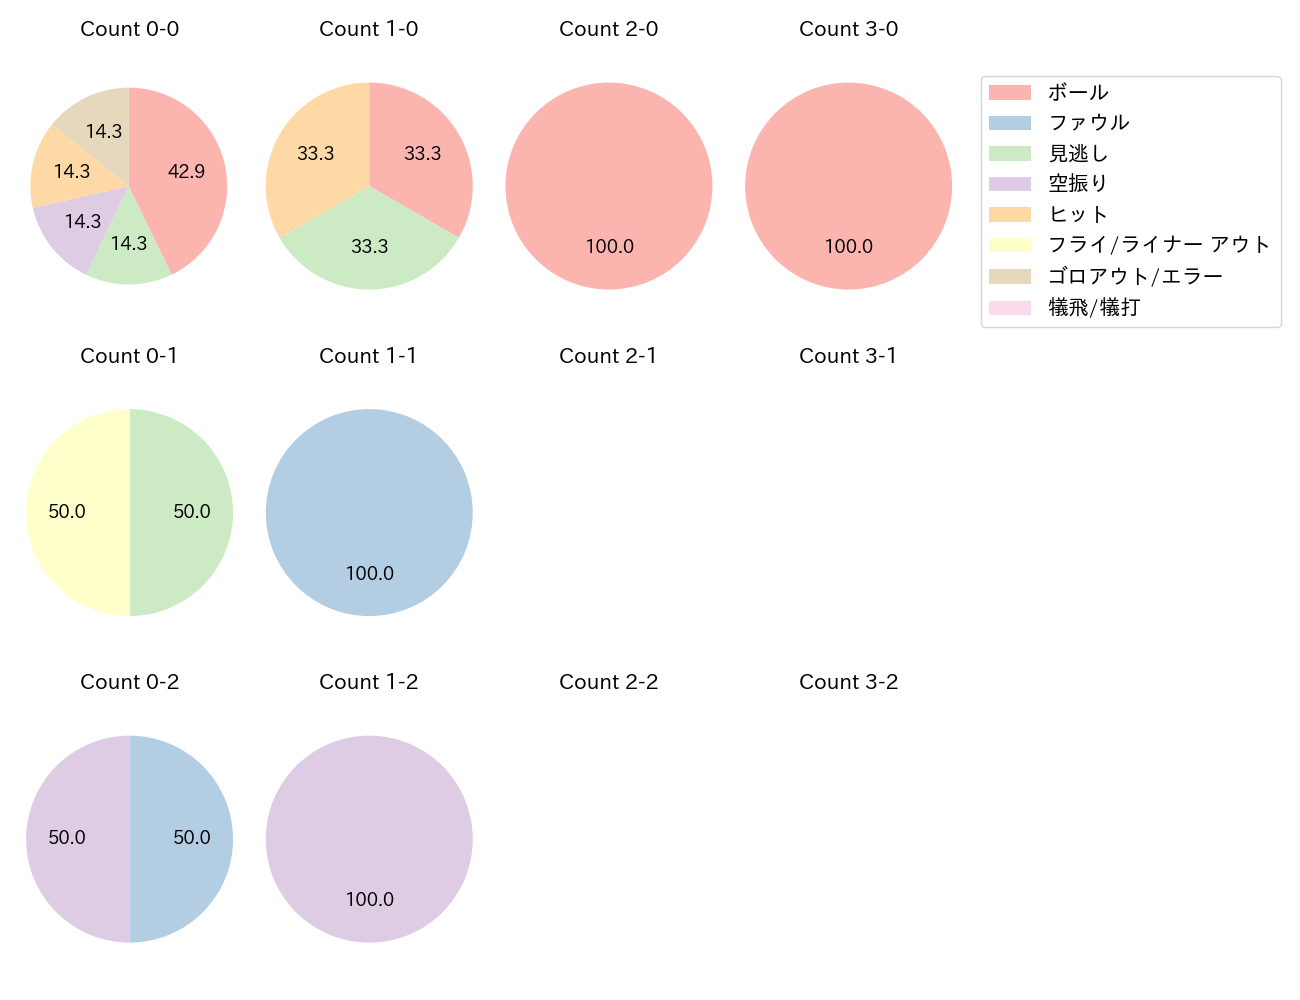 小野寺 暖の球数分布(2021年8月)